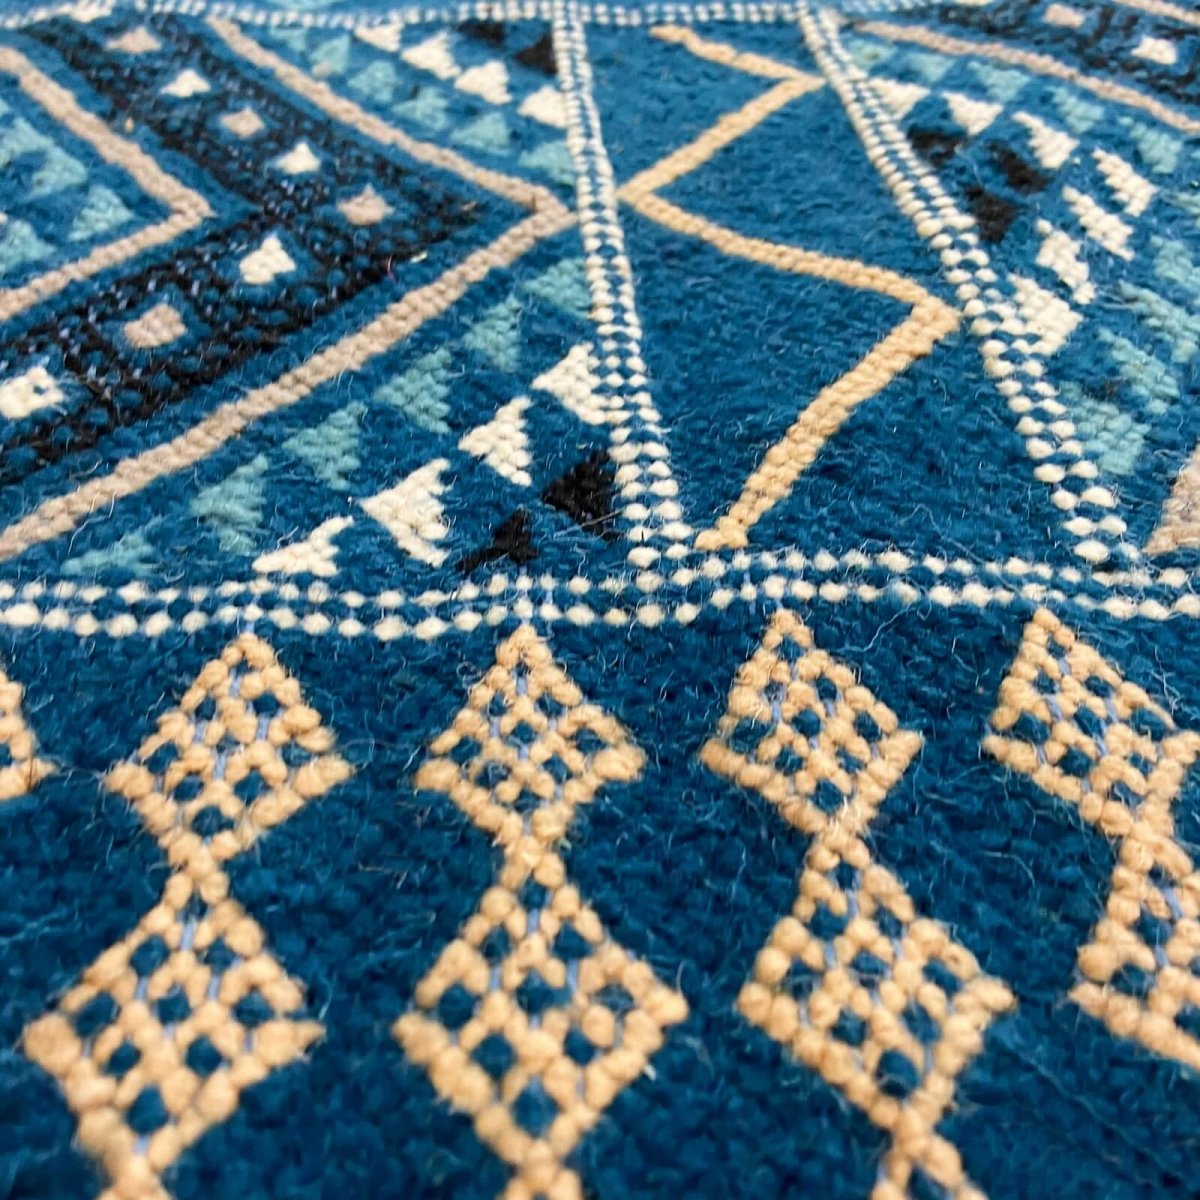 tappeto berbero Tappeto Margoum Syphax 200x300 cm Blu/Bianco (Fatto a mano, Lana, Tunisia) Tappeto margoum tunisino della città 